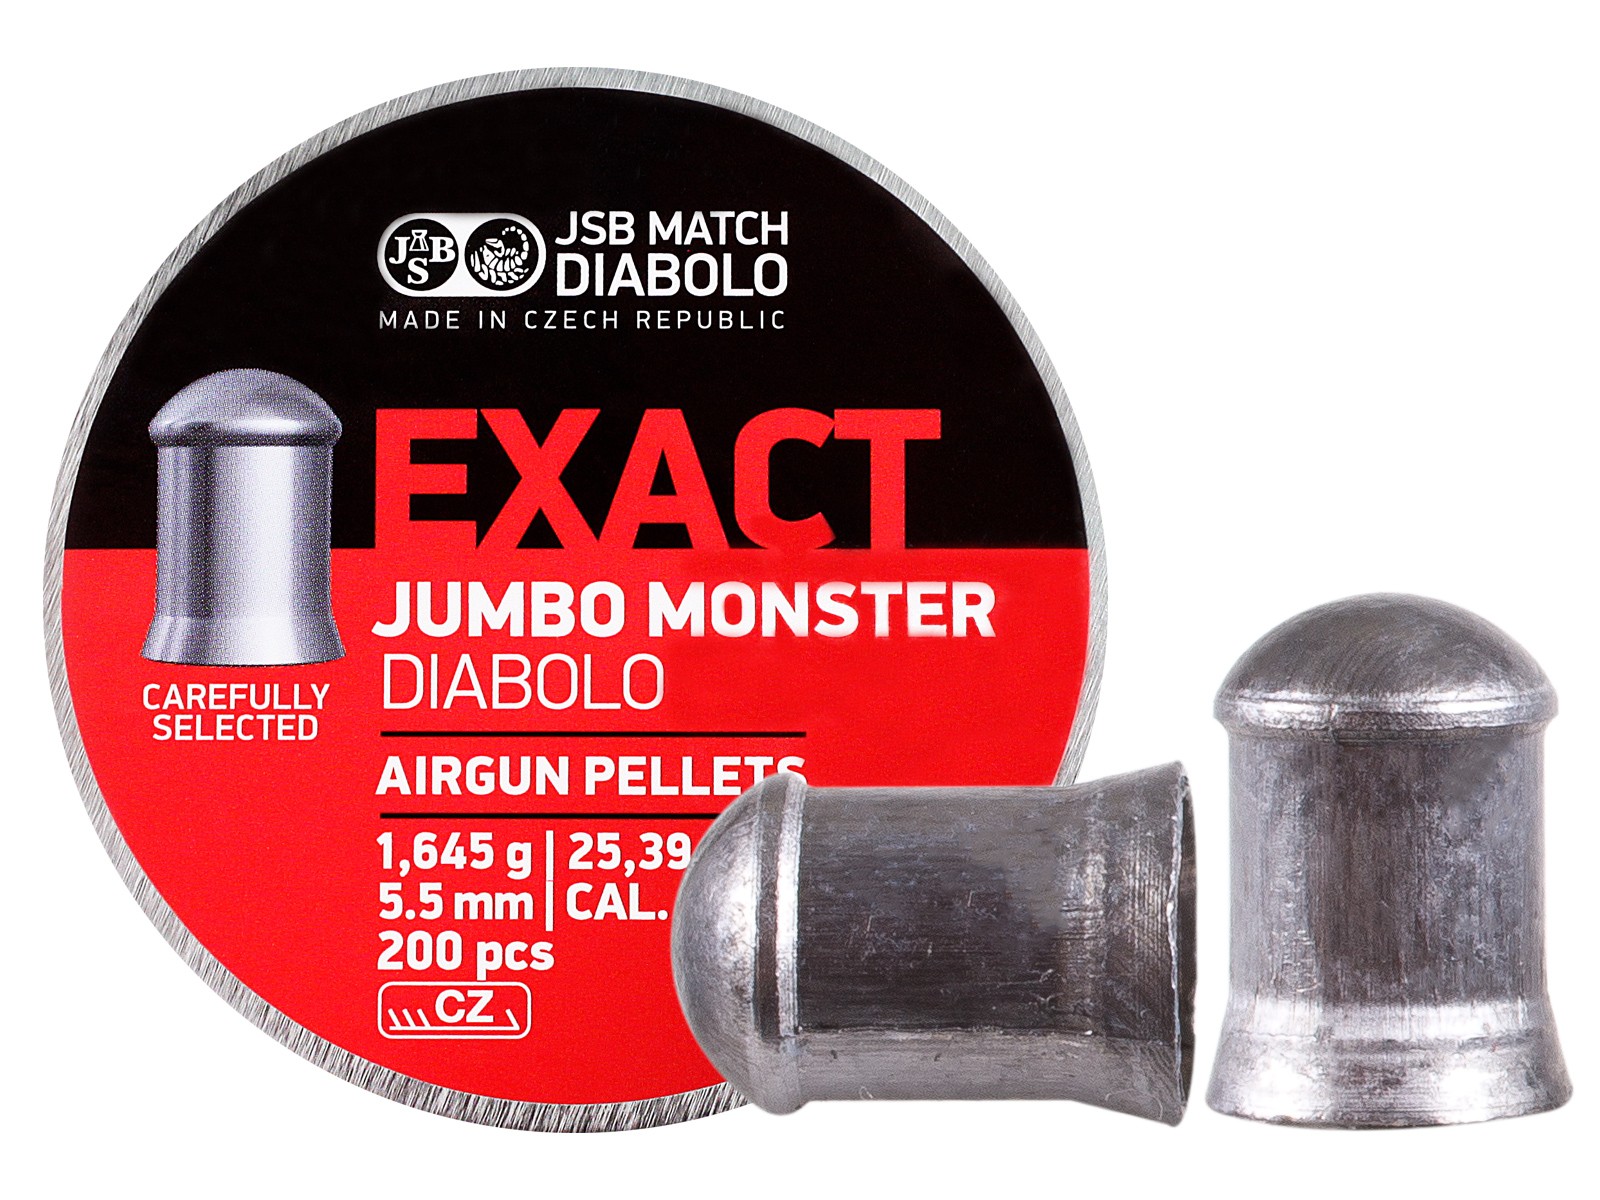 JSB Match Diabolo Exact Jumbo Monster .22 Cal, 25.39 Grains, Domed, 200ct 0.22